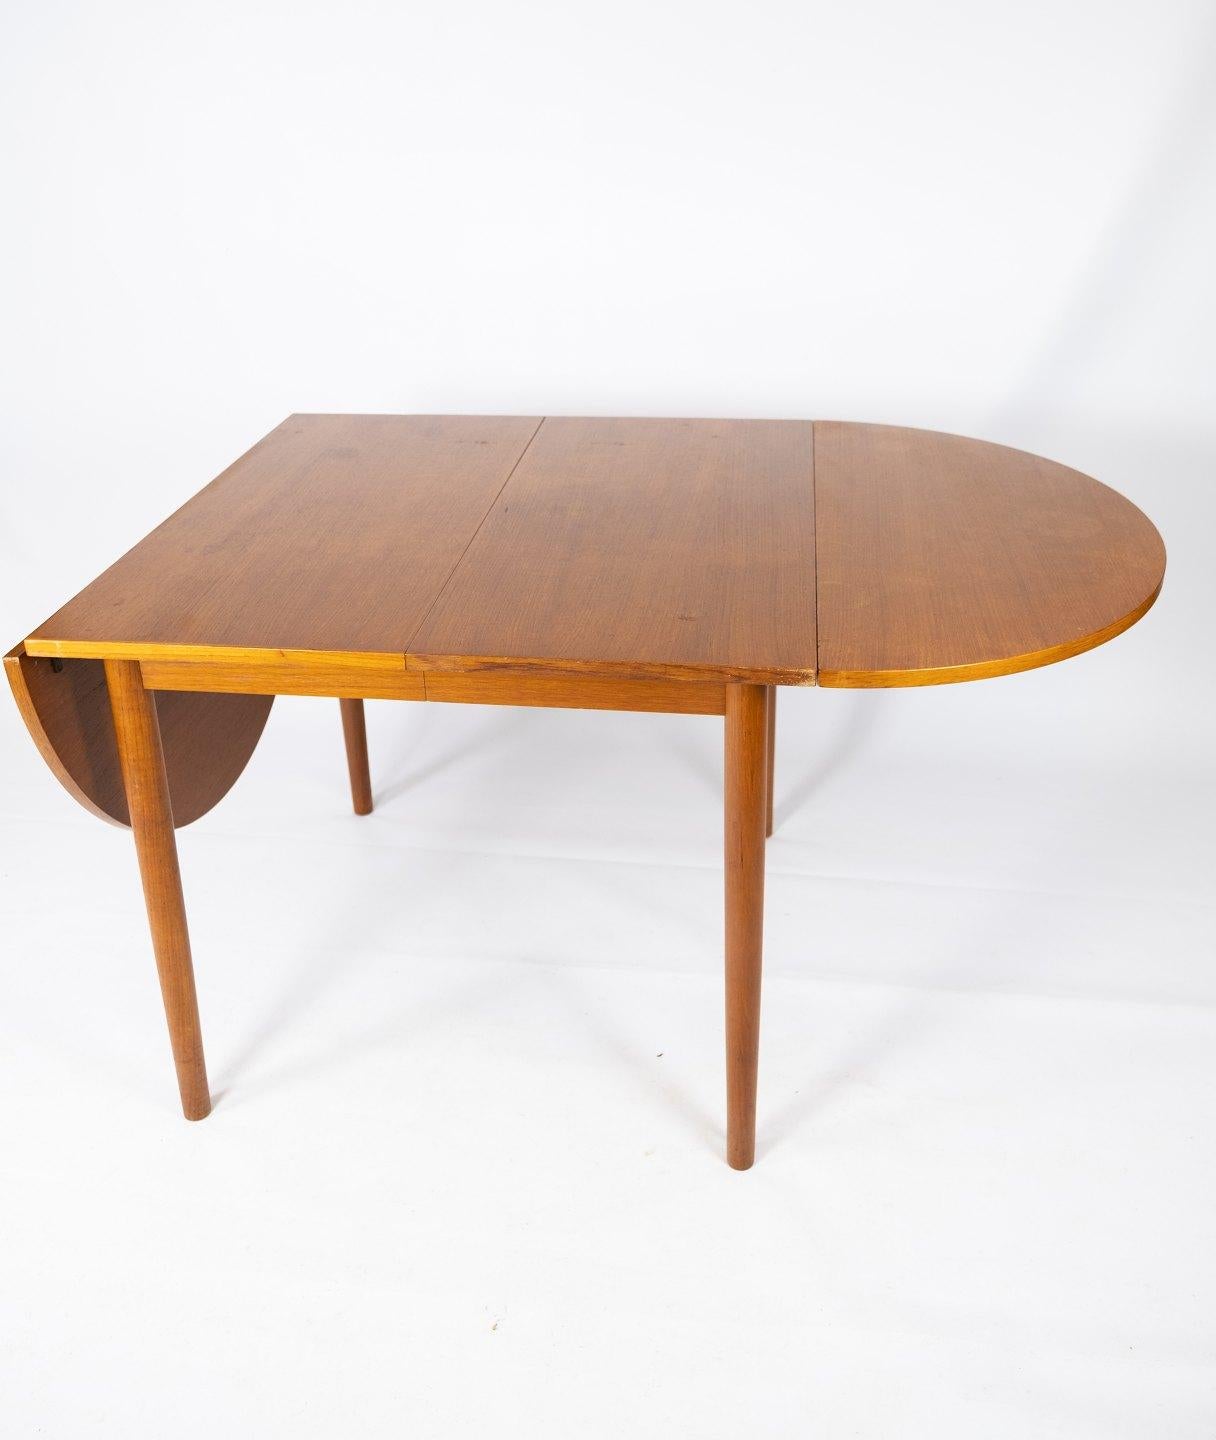 Dieser Esstisch aus Teakholz, der in den 1960er Jahren von dem berühmten dänischen Möbeldesigner Arne Vodder entworfen wurde, verkörpert die zeitlose Eleganz und Funktionalität des skandinavischen Designs.

Dieser Tisch ist aus hochwertigem Teakholz